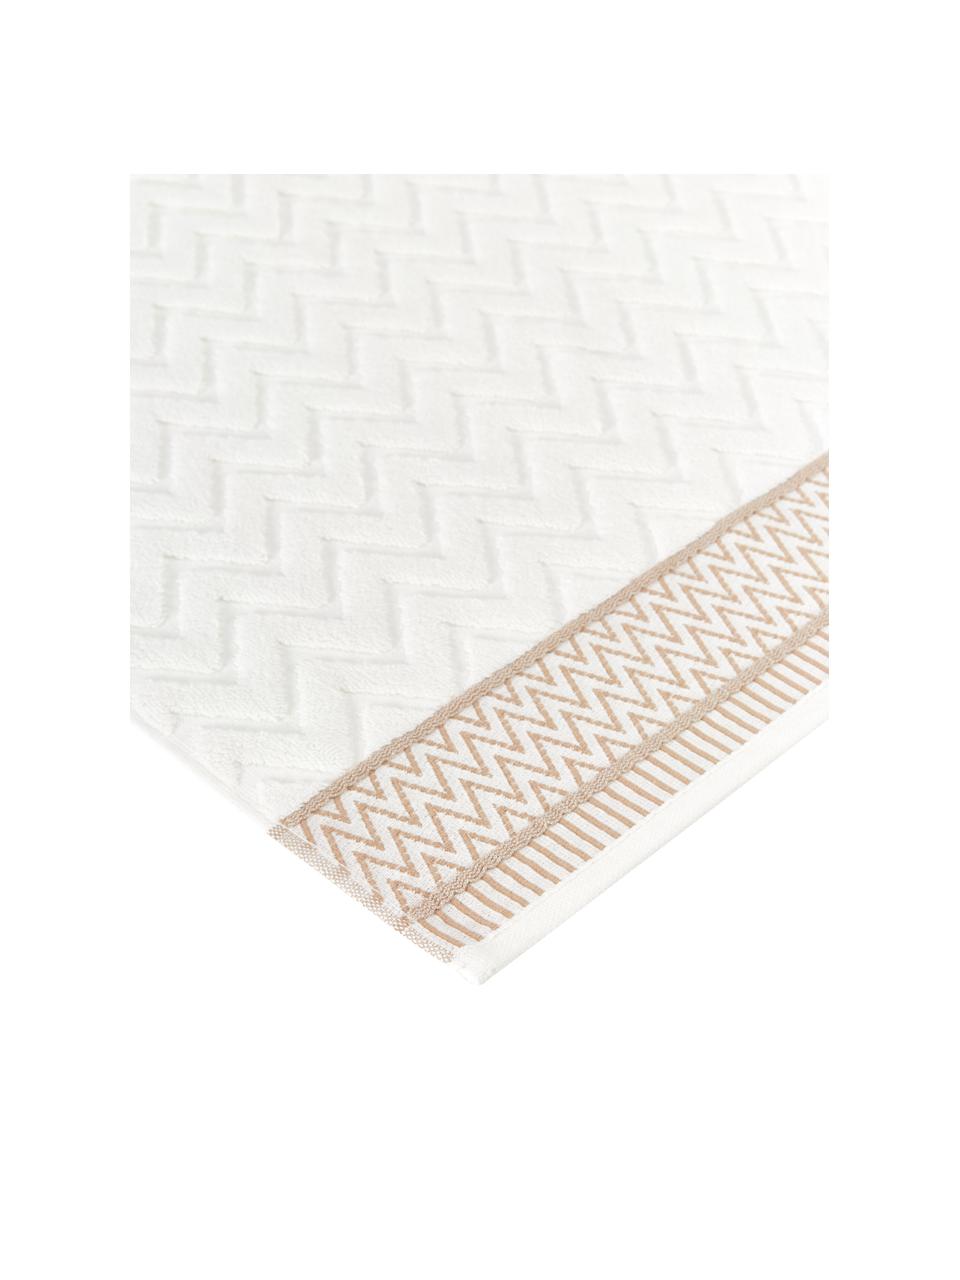 Asciugamano in cotone con motivo a rilievo Karma, 100% cotone
Qualità pesante, 600 g/m2, Bianco, beige, Telo bagno